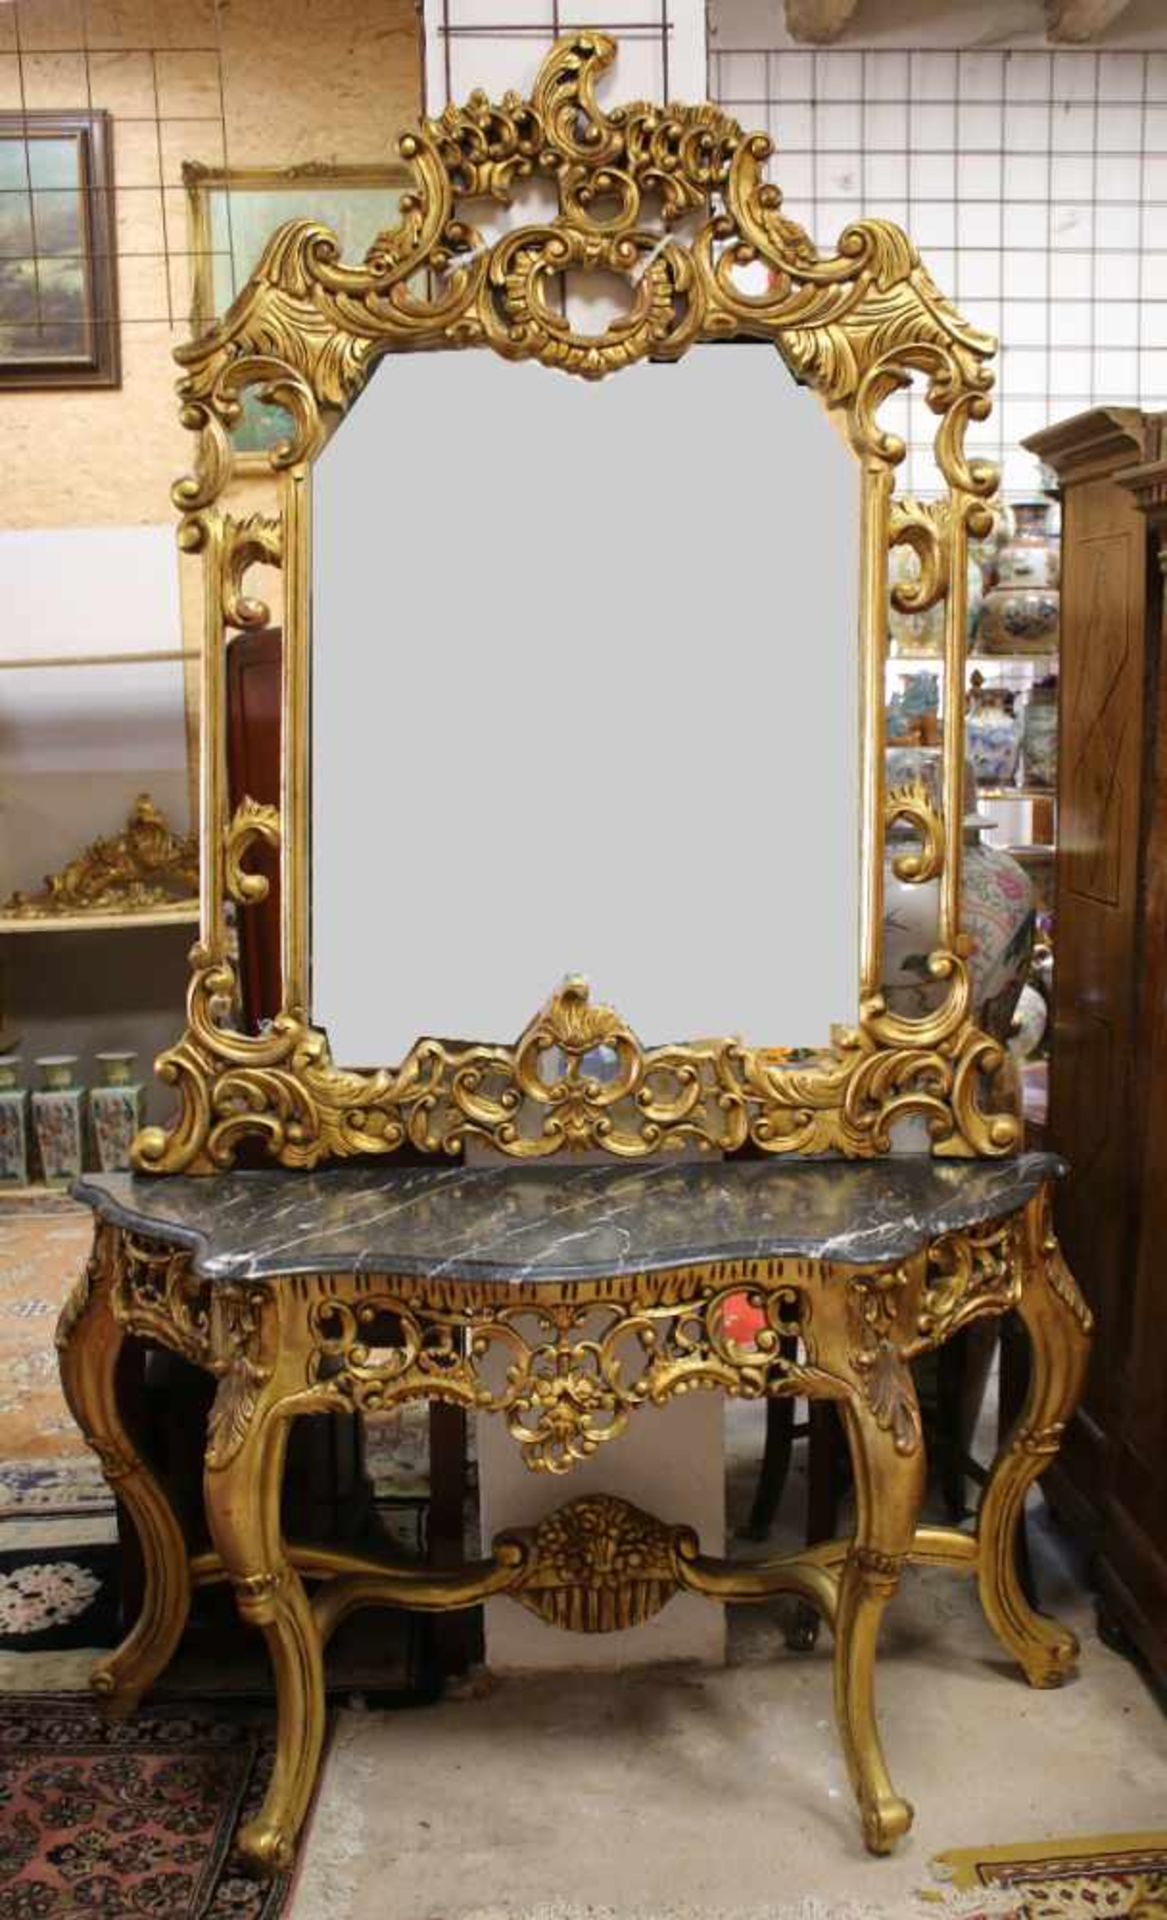 Barockspiegel mit Konsoltisch Imponierender Spiegel im Stil des Barock, Tisch und Spiegelrahmen